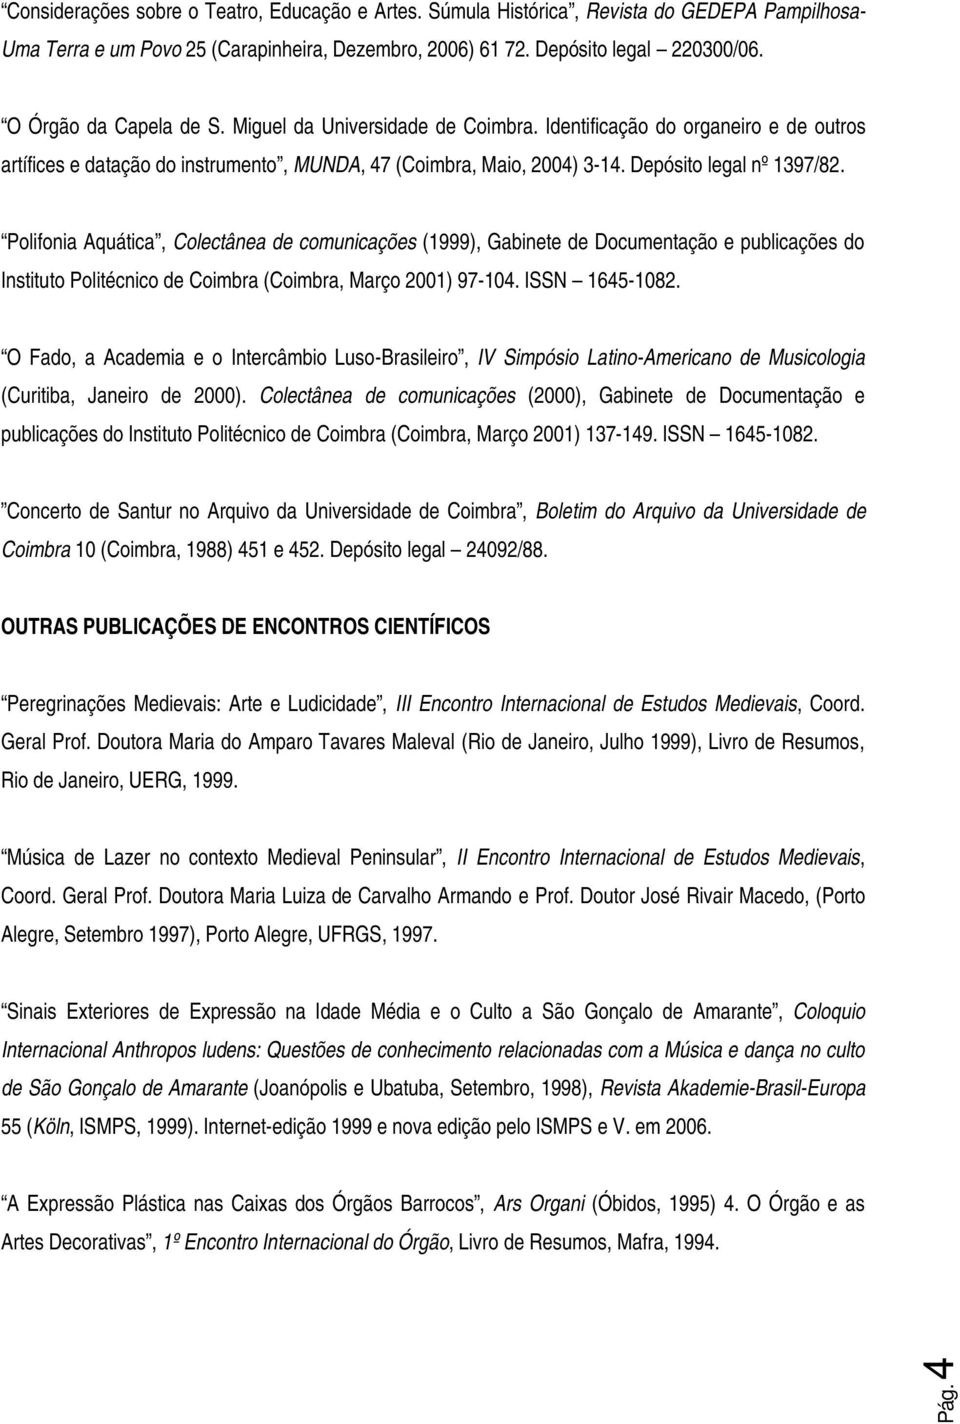 Polifonia Aquática, Colectânea de comunicações (1999), Gabinete de Documentação e publicações do Instituto Politécnico de Coimbra (Coimbra, Março 2001) 97-104. ISSN 1645-1082.